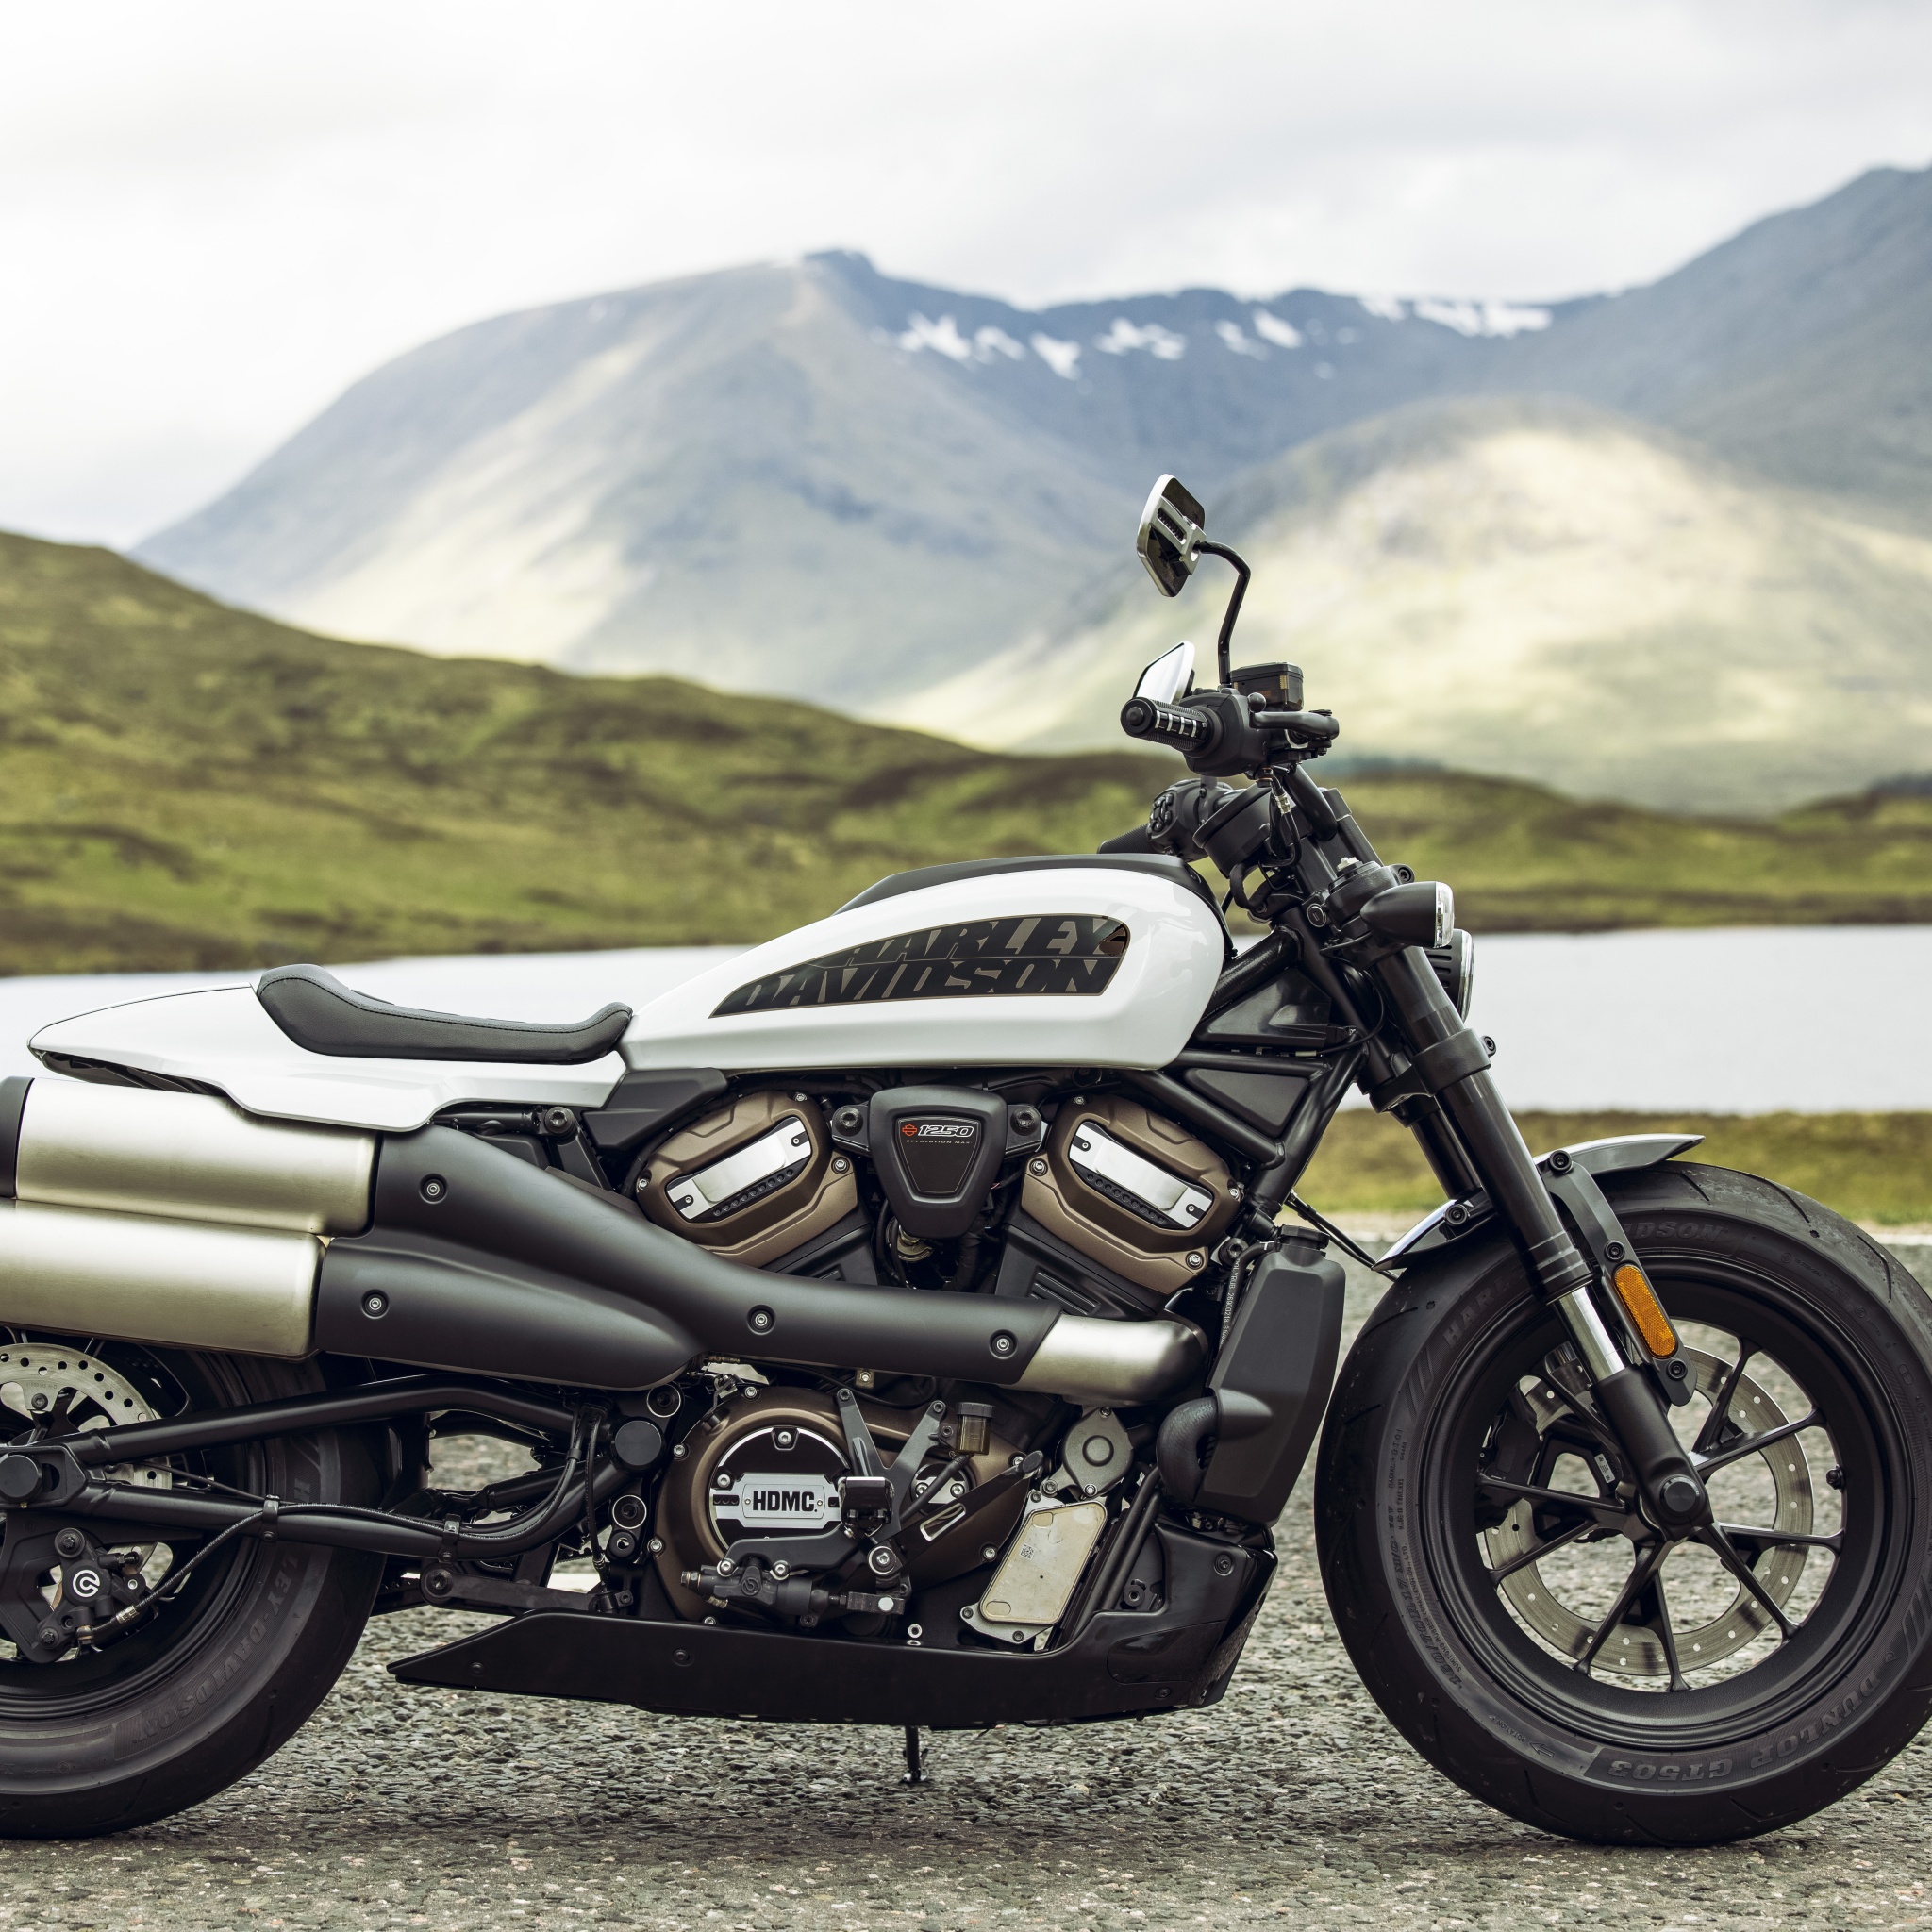 Harley-Davidson Sportster S Wallpaper 4K, Cruiser motorcycle, 2021, 5K